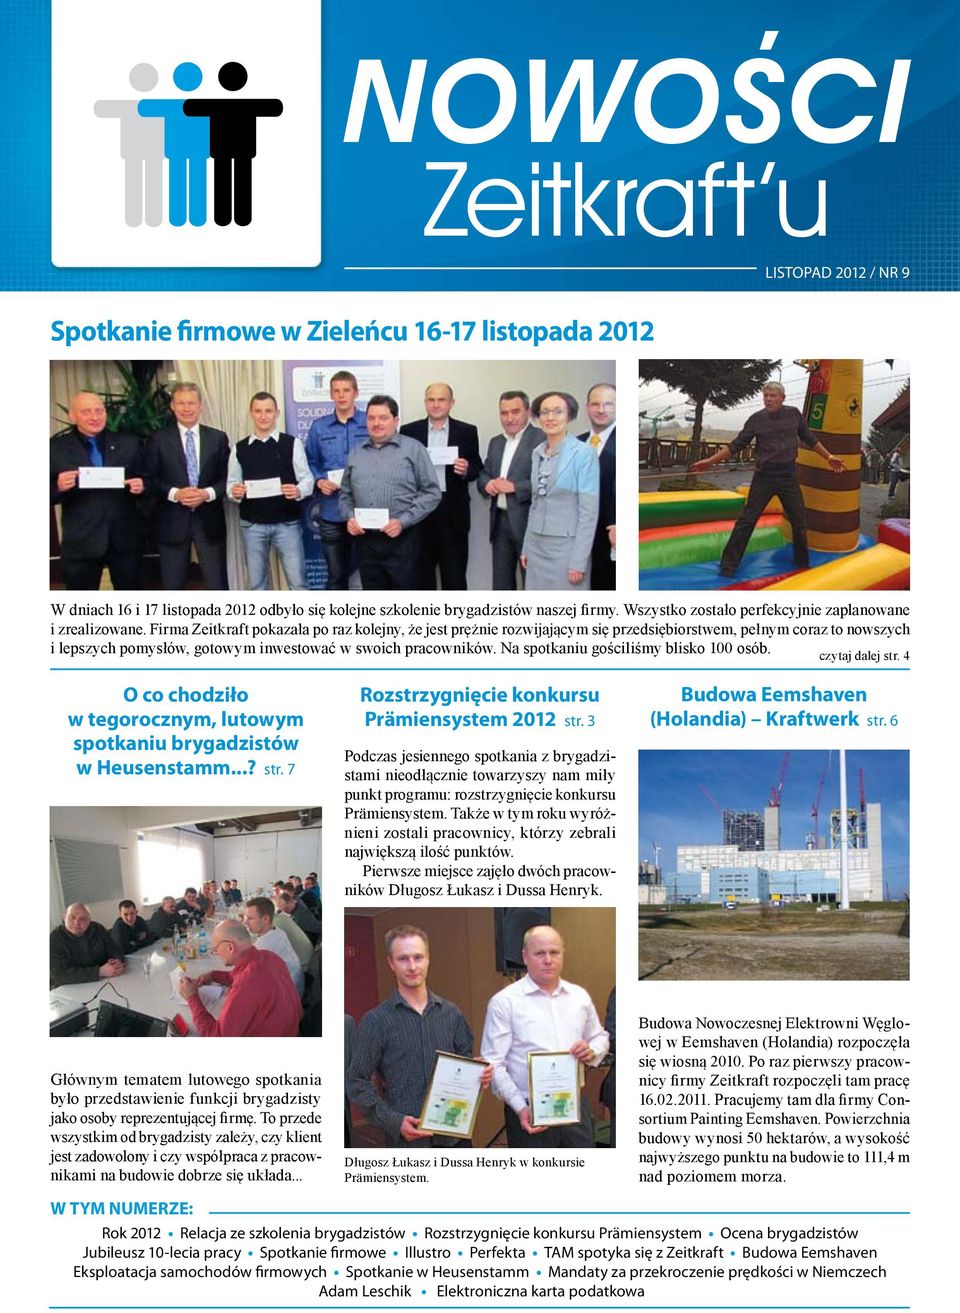 Firma Zeitkraft pokazała po raz kolejny, że jest prężnie rozwijającym się przedsiębiorstwem, pełnym coraz to nowszych i lepszych pomysłów, gotowym inwestować w swoich pracowników.